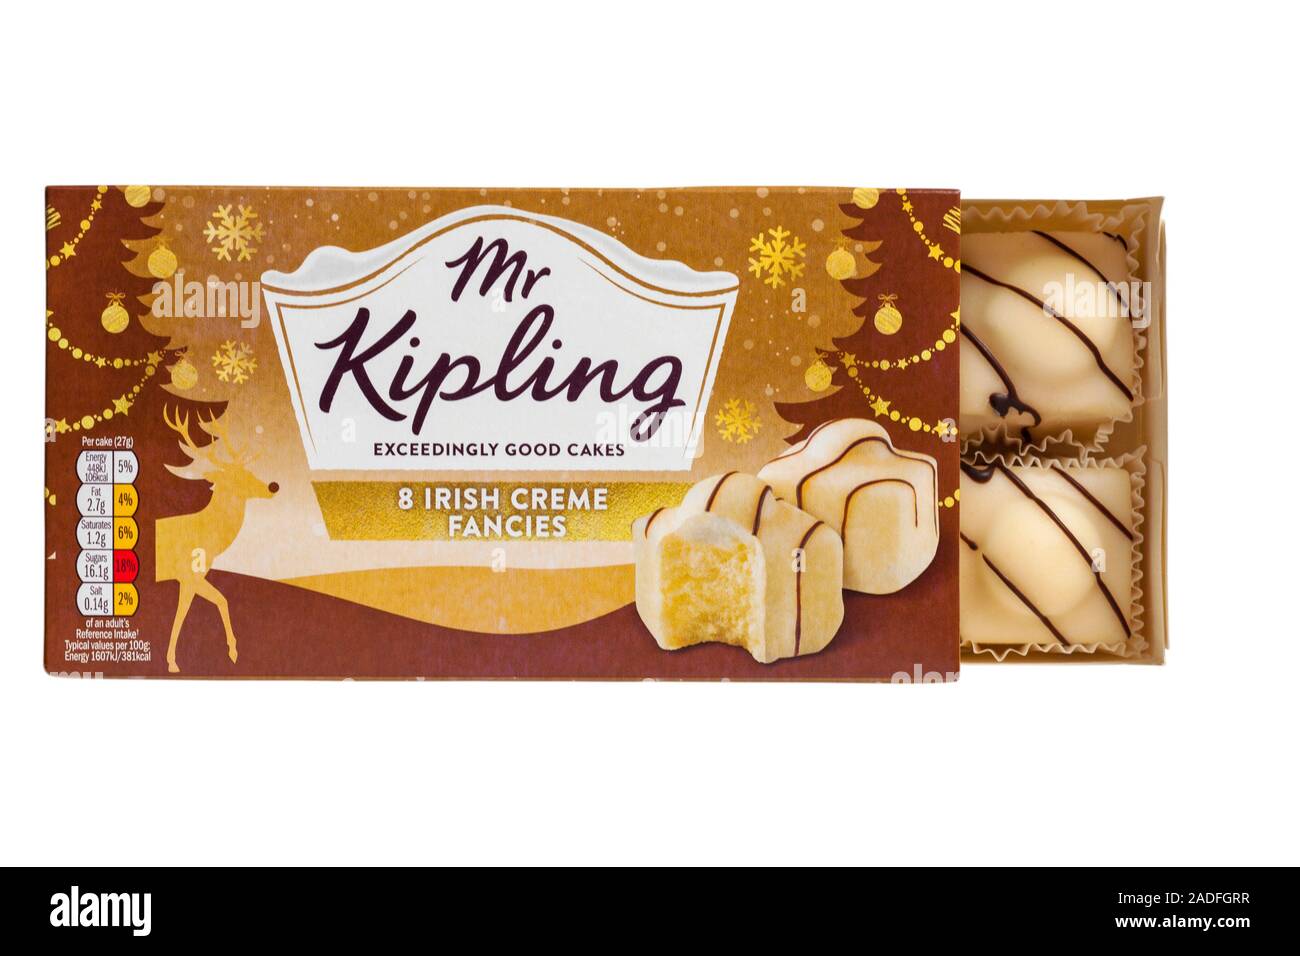 Box von Herr Kipling 8 irische Crème Phantasien, die überaus guten Kuchen geöffnet Inhalte auf weißem Hintergrund zu zeigen Stockfoto